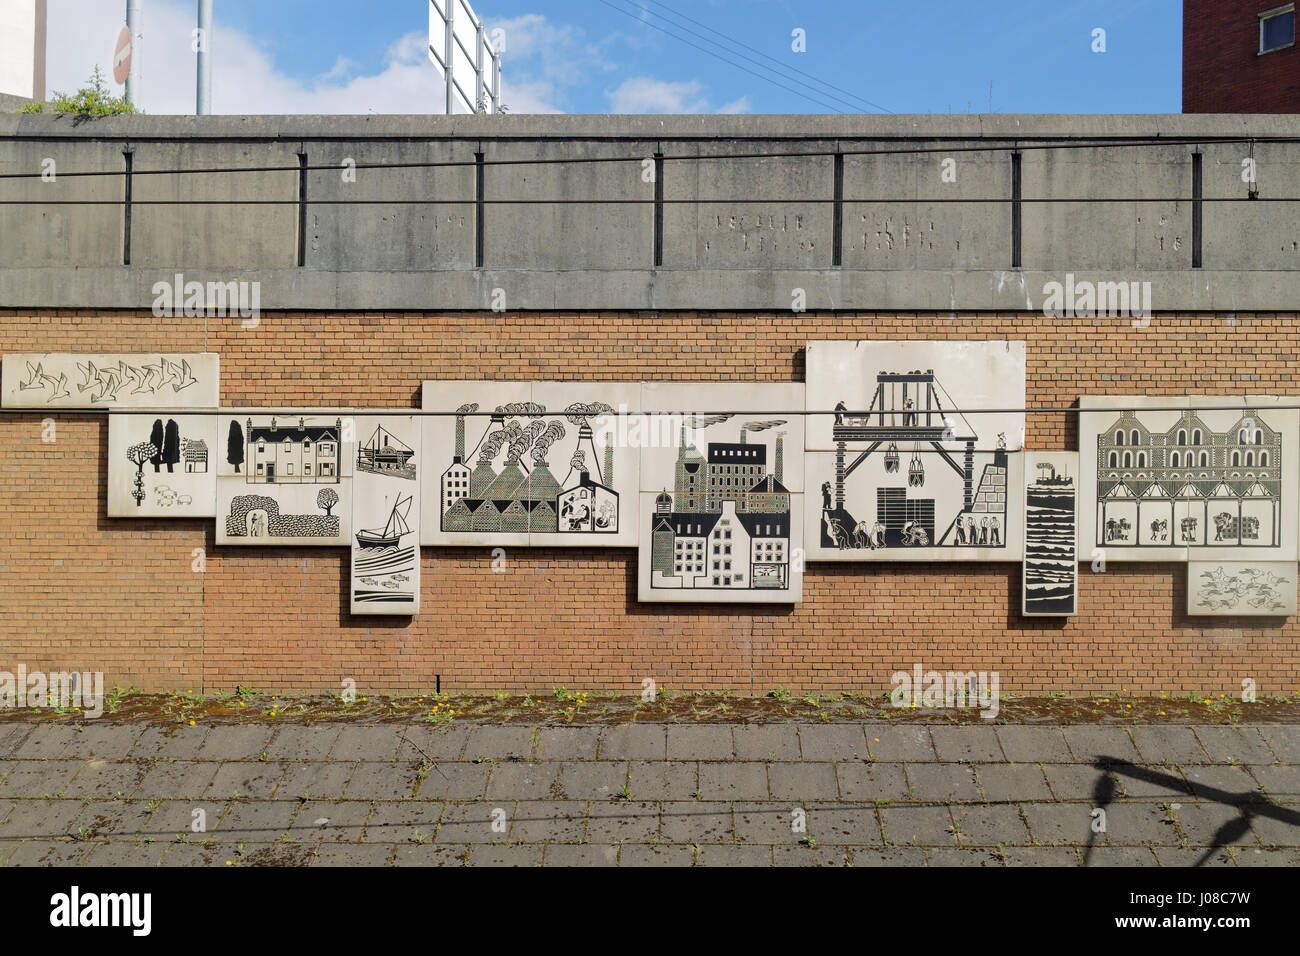 Das ehemalige Finnieston Railway Station Kunst im öffentlichen Raum Wandbild aus den 1970er Jahren feiert das neue und alte Glasgow civic Vertrauen Stockfoto